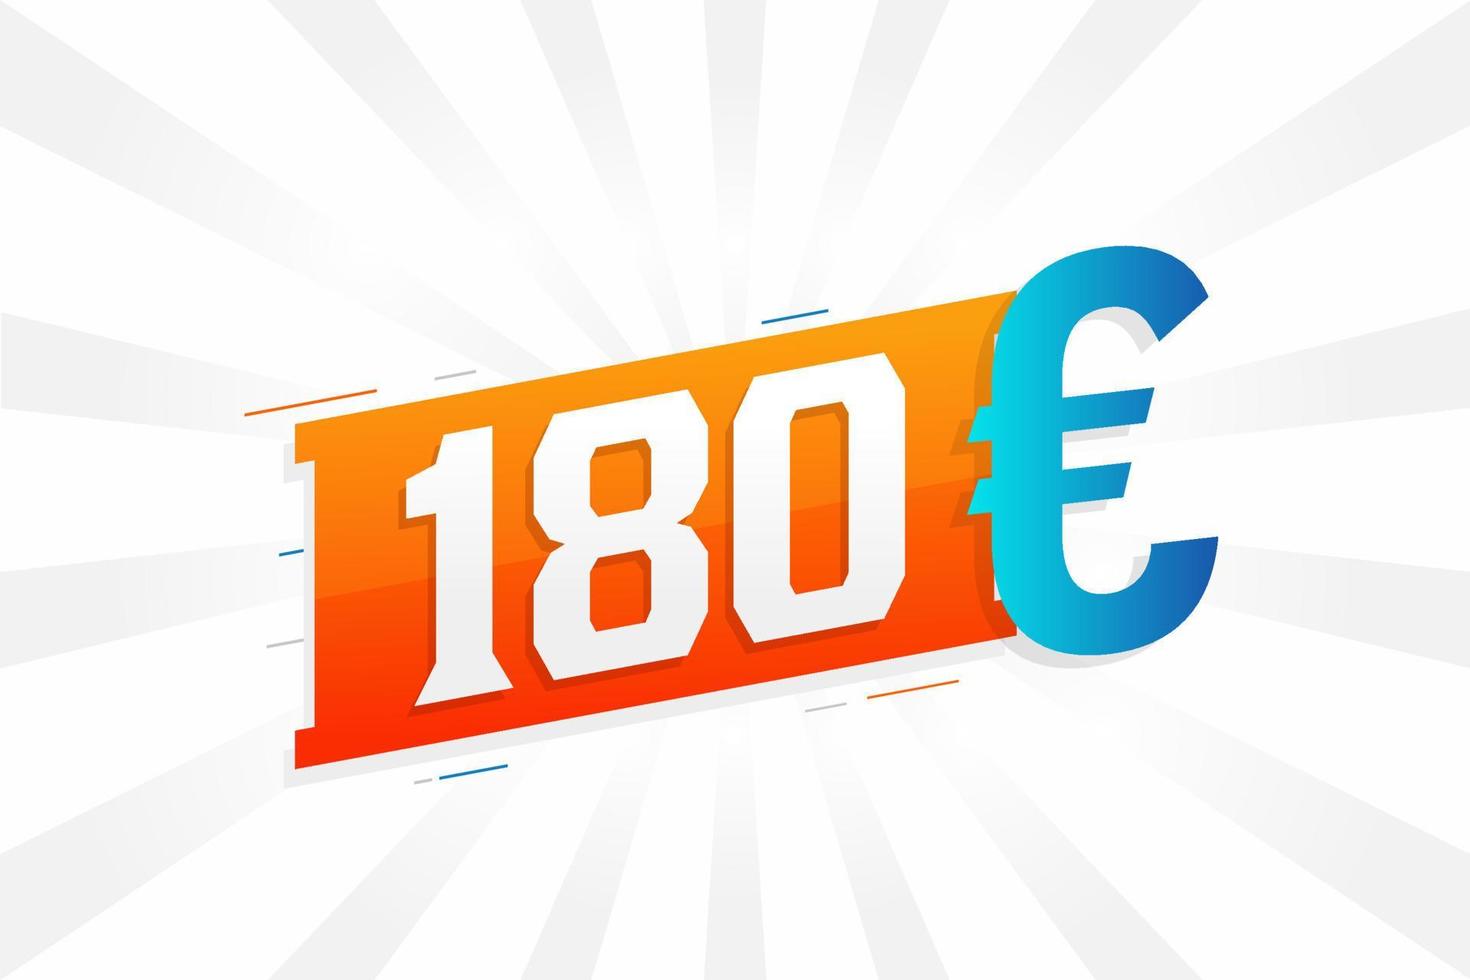 Symbole de texte vectoriel de devise de 180 euros. 180 euros vecteur de stock d'argent de l'union européenne